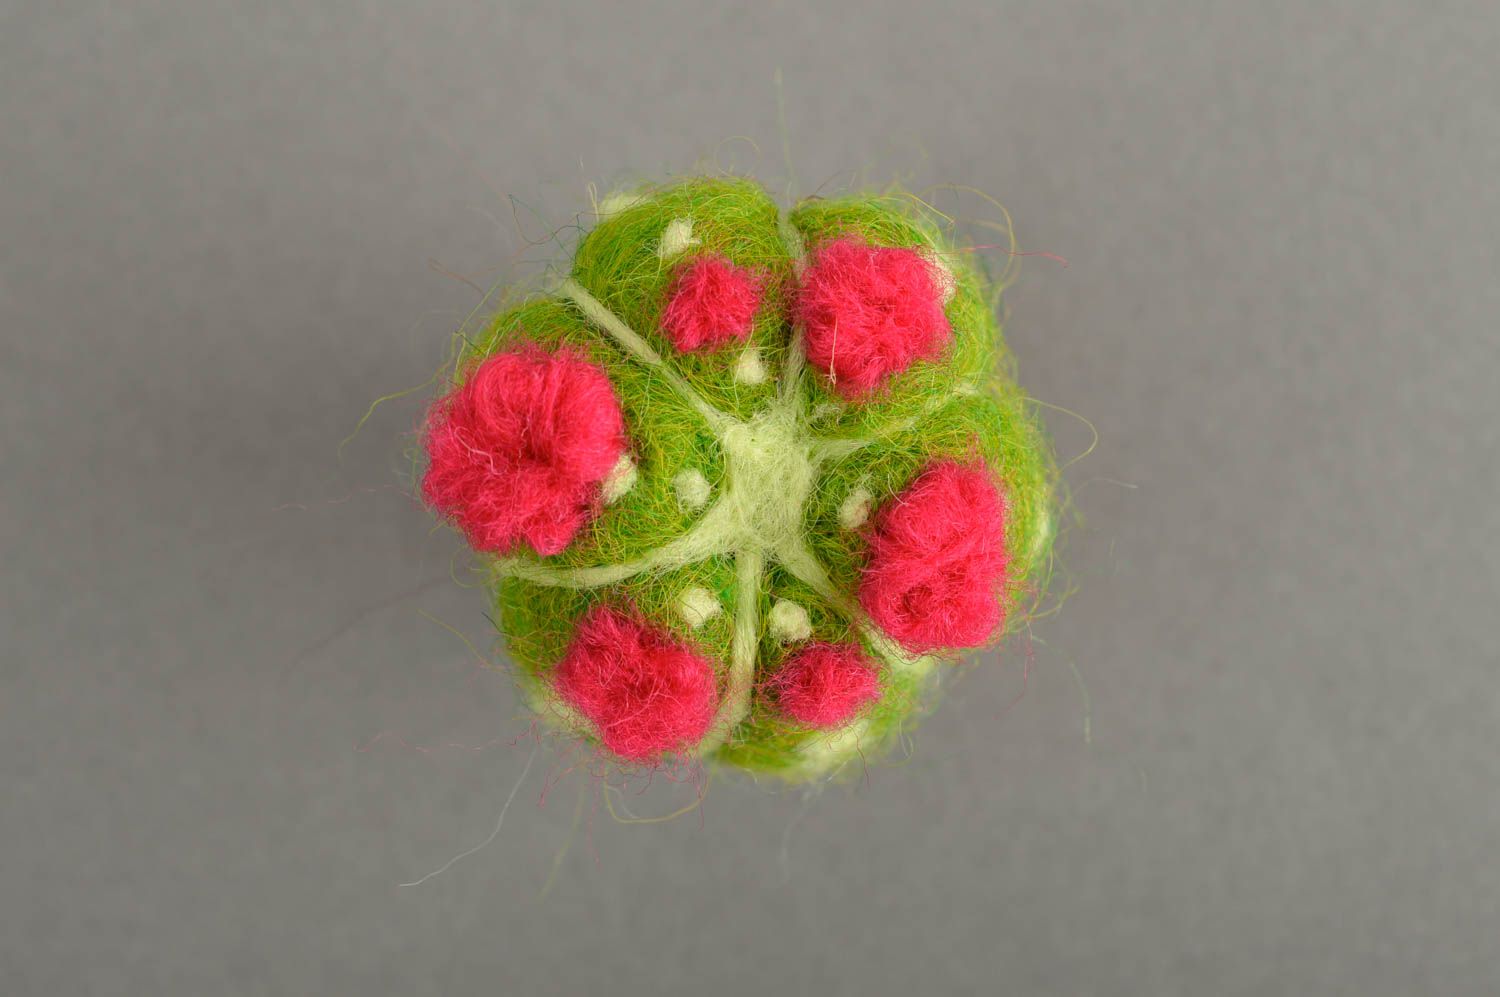 Игрушка ручной работы кактус мягкая игрушка из шерсти интерьерная игрушка фото 4